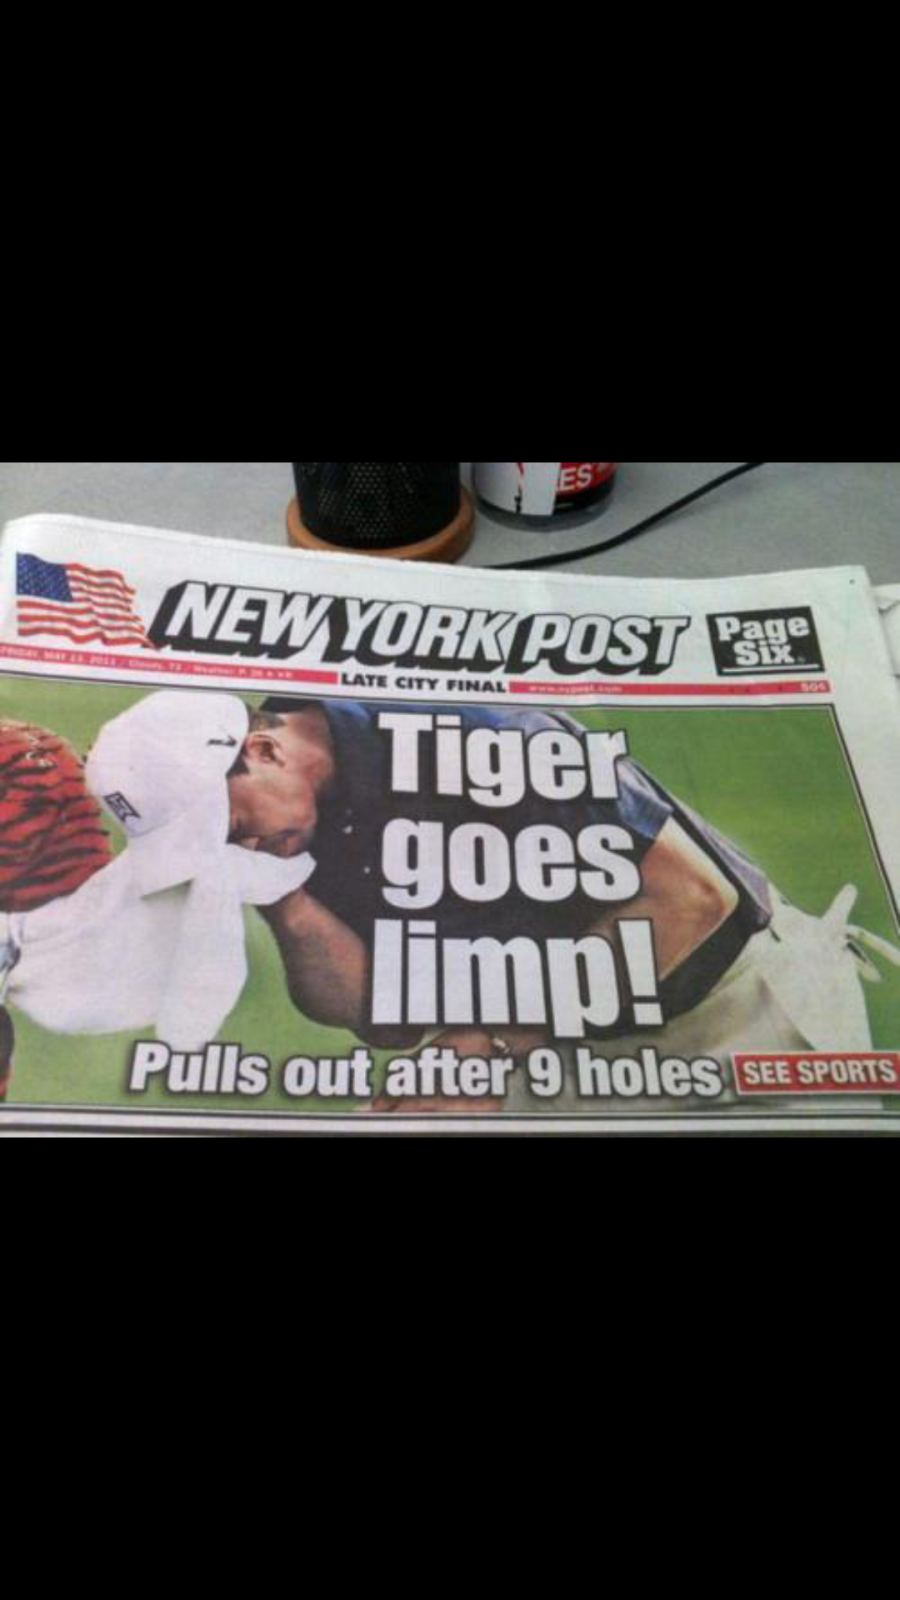 Tiger goes limp